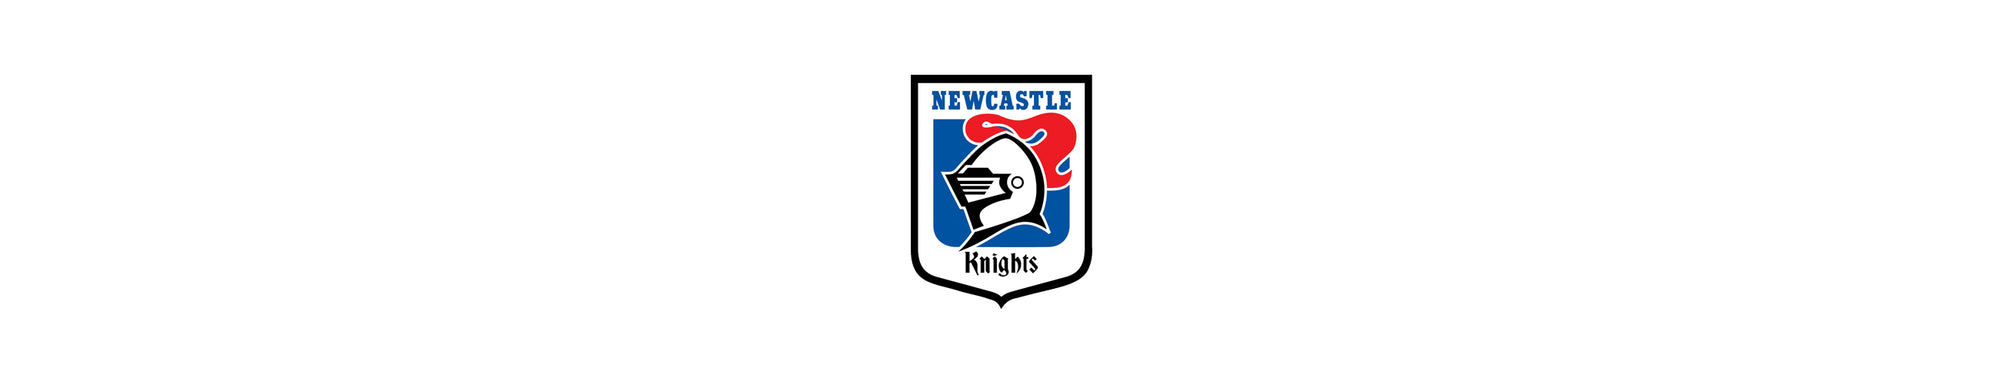 Retro Newcastle Knights